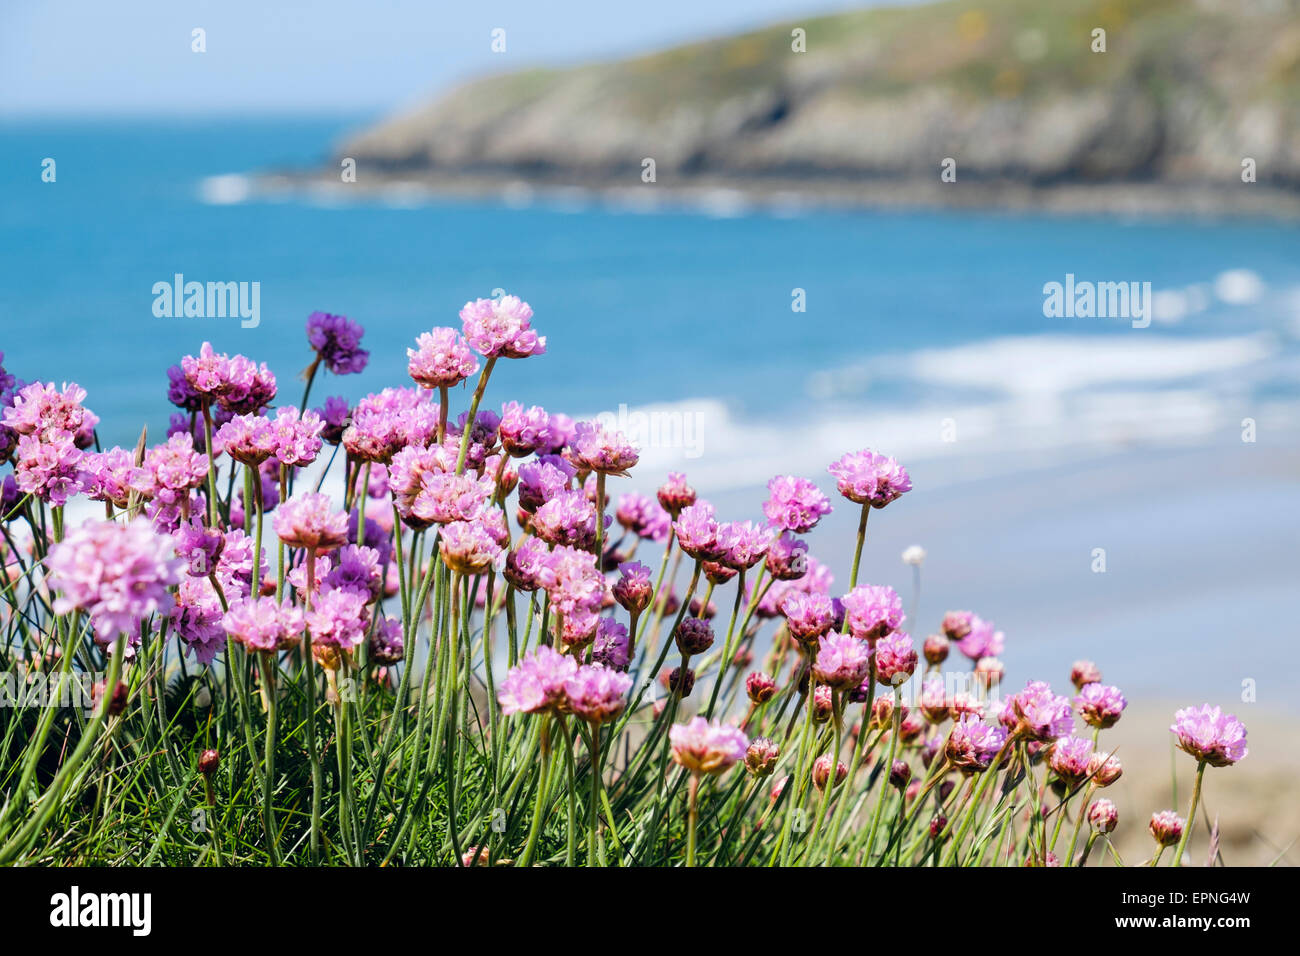 Mare di fiori immagini e fotografie stock ad alta risoluzione - Alamy